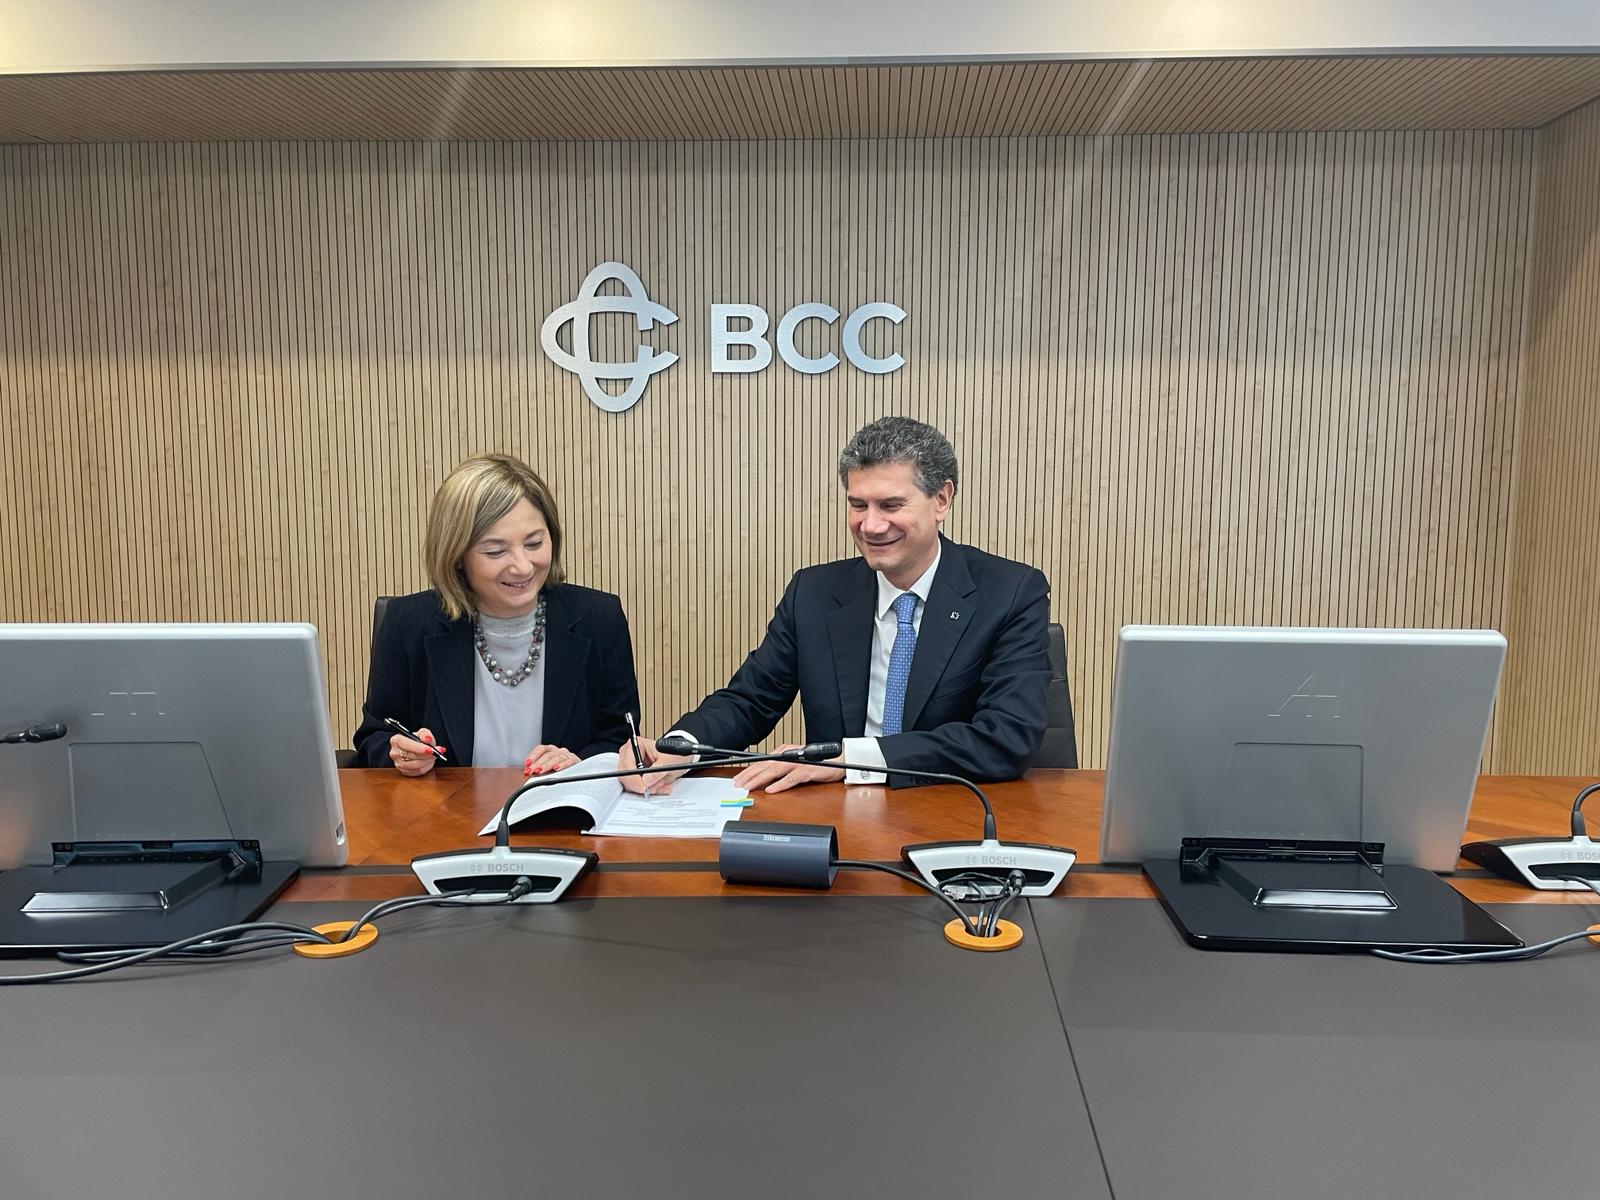 Da Bei e Gruppo Bcc Iccrea 400 milioni di euro per sostenere l’innovazione e lo sviluppo economico nel Mezzogiorno